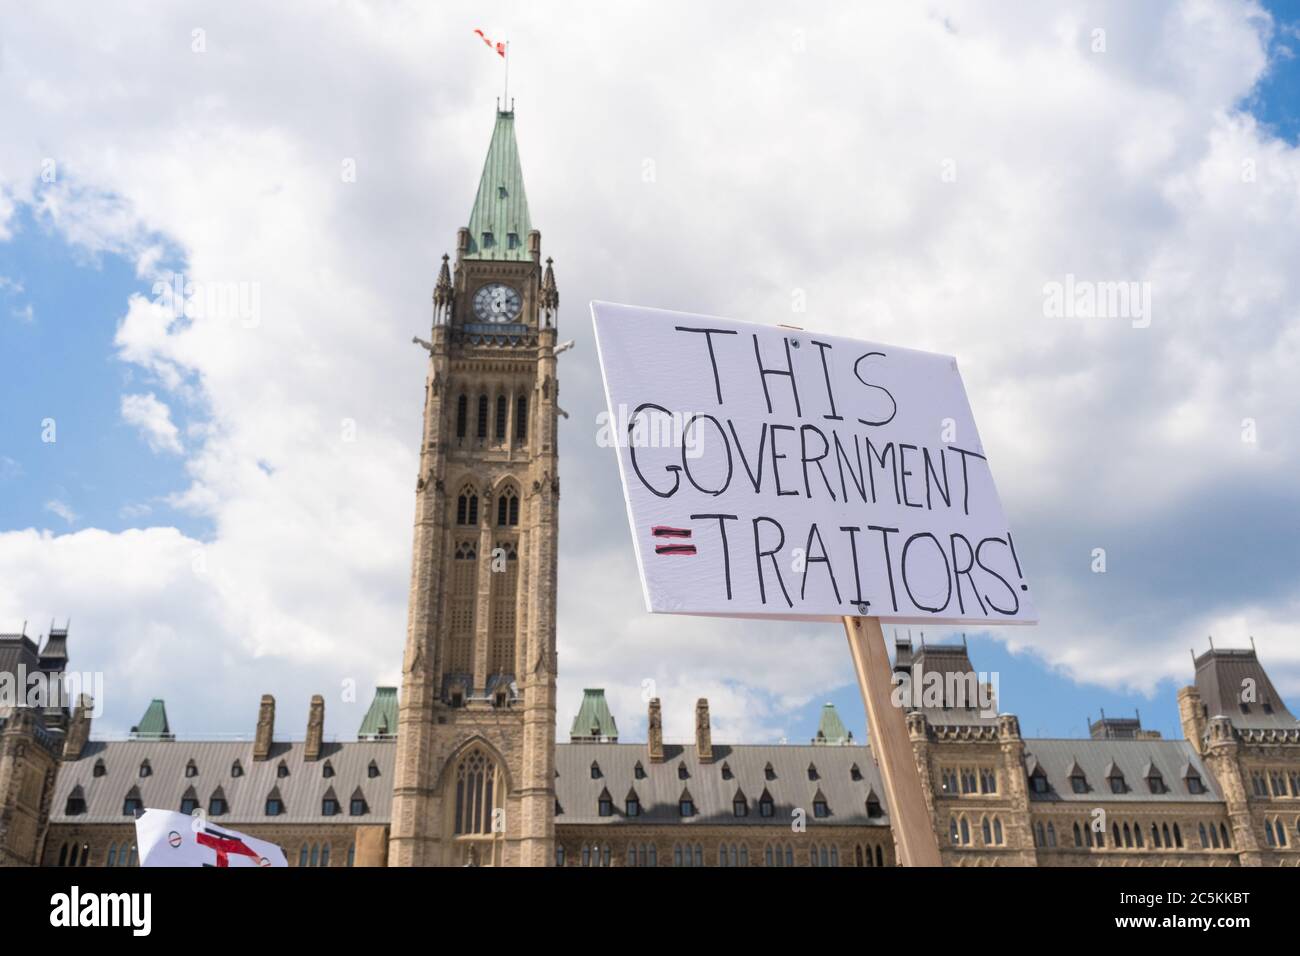 Les manifestants accusent le gouvernement d'être traîtres à une manifestation à l'extérieur de la Colline du Parlement, le jour de la fête du Canada, à Ottawa, au Canada. Banque D'Images